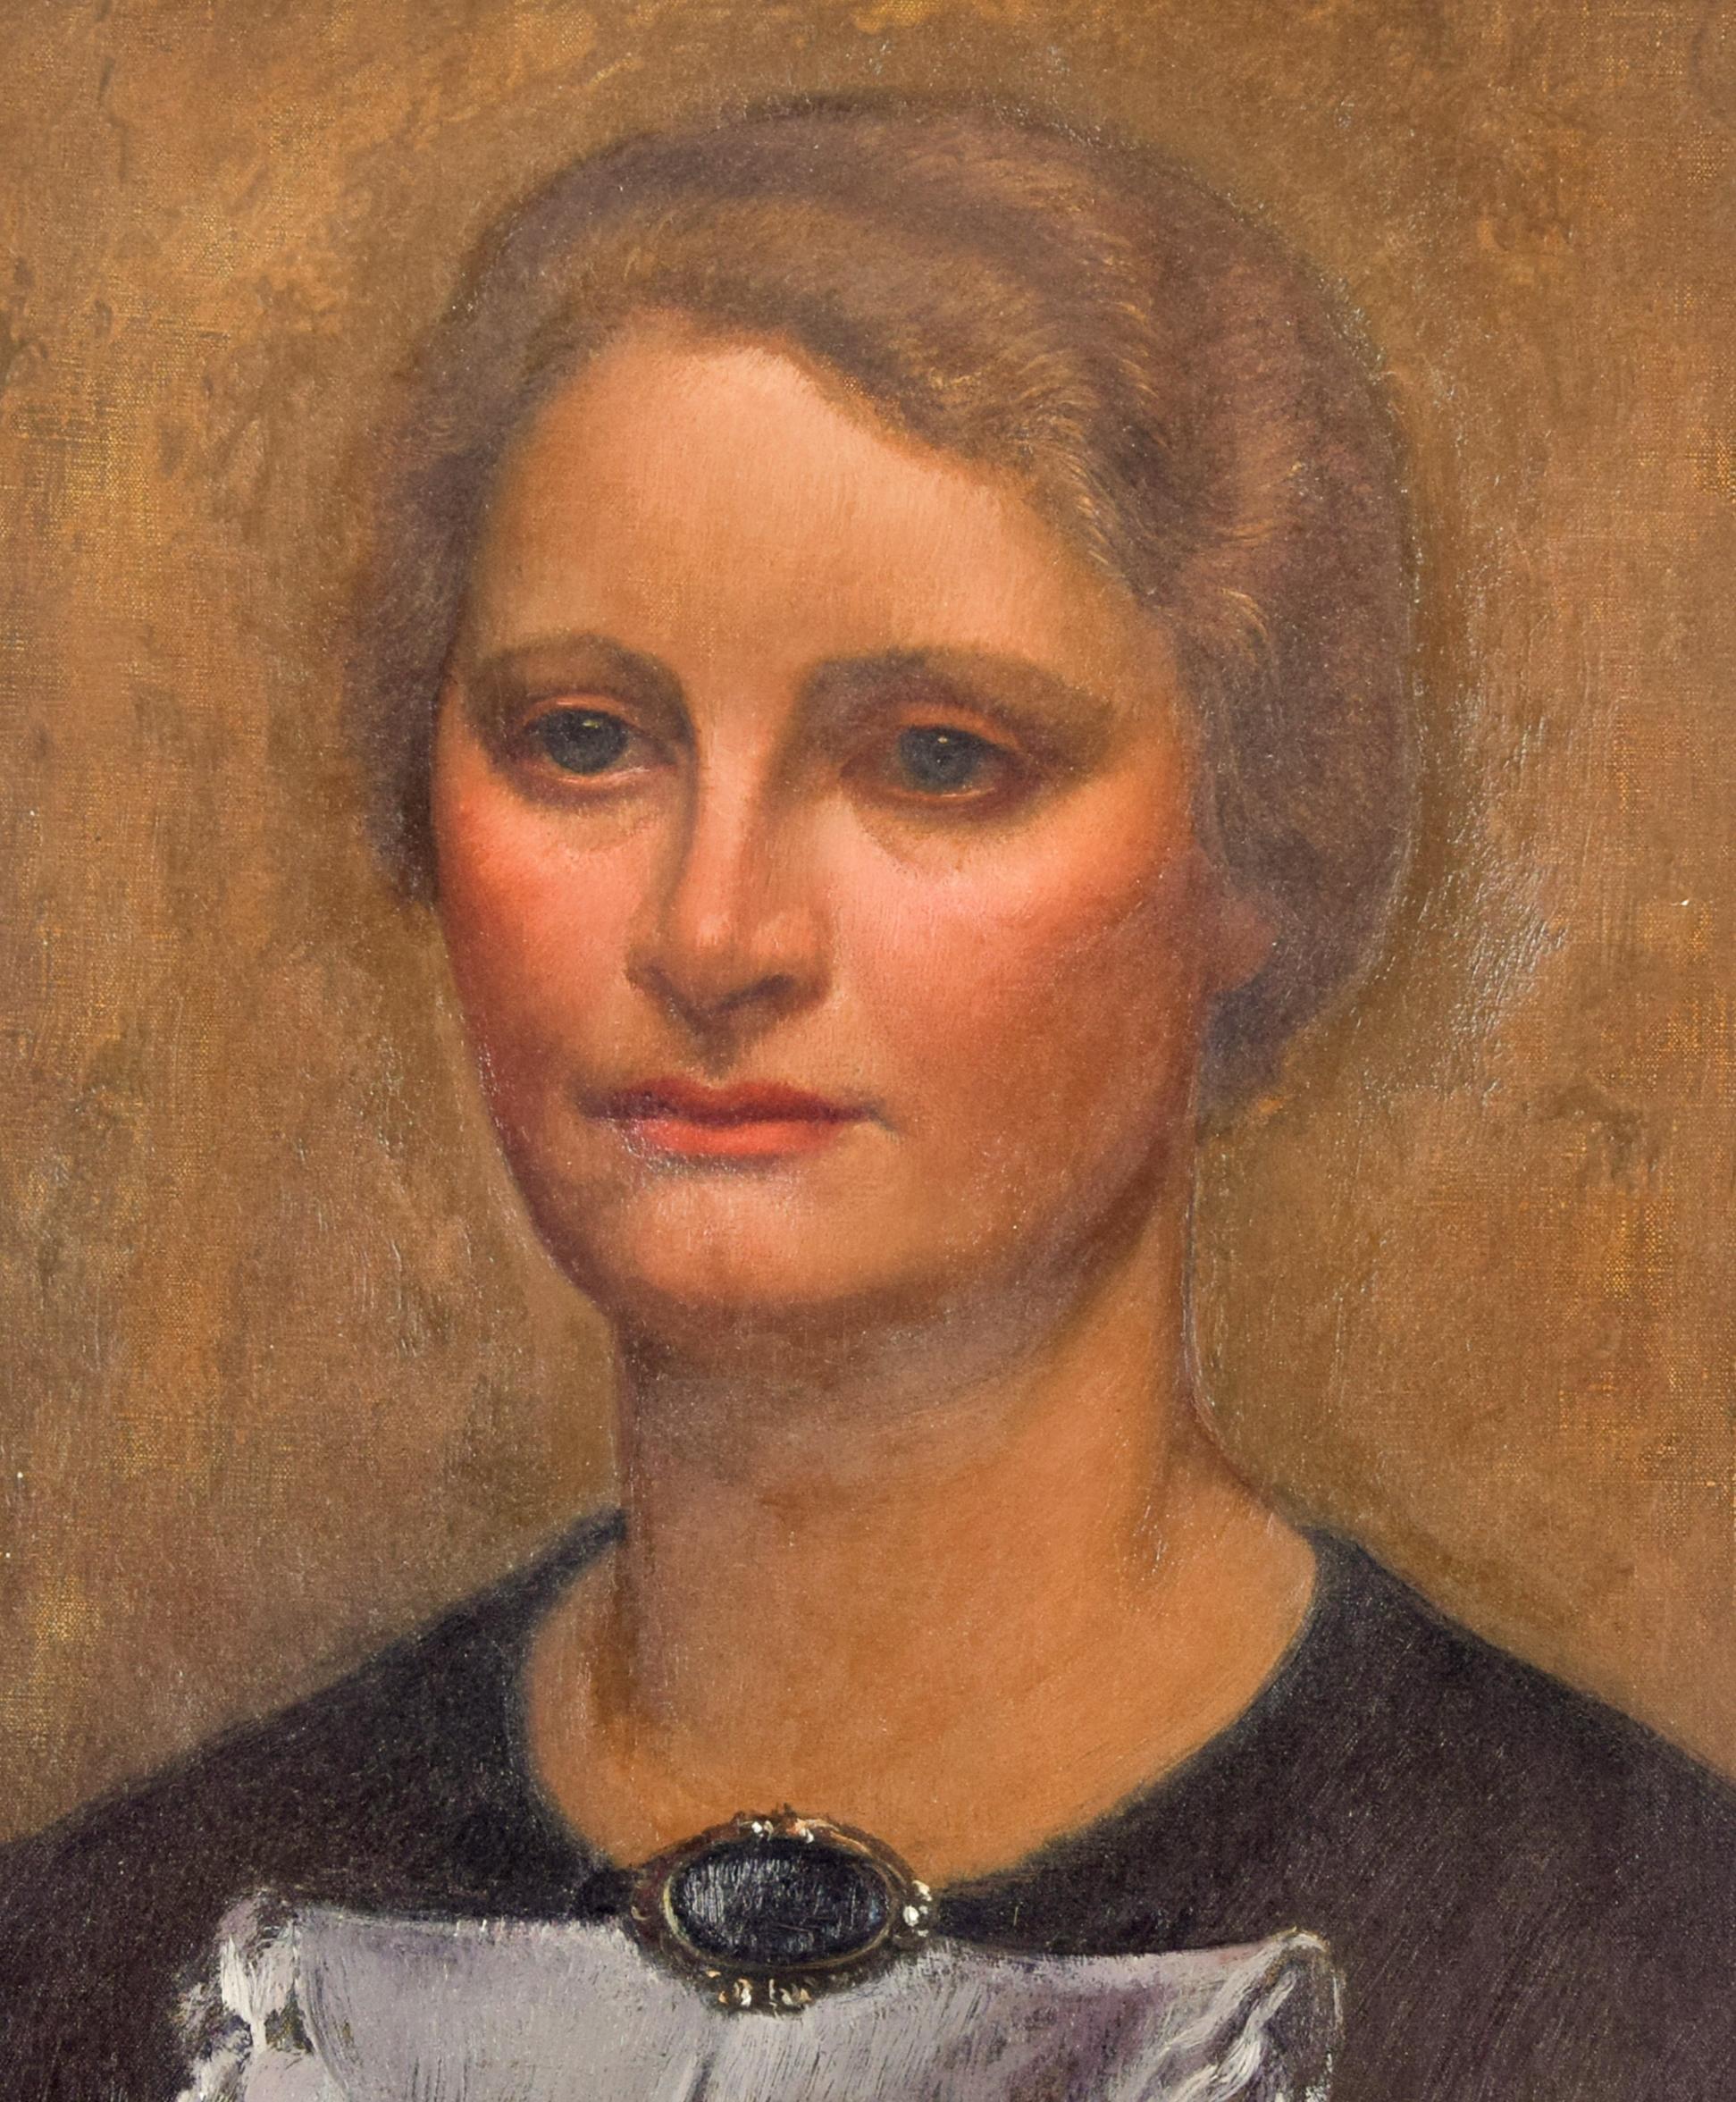 Portrait de dame est une œuvre originale à l'huile sur toile réalisée par Carlo Socrate (1889-1967) en 1930.

Un beau portrait de femme réalisé par l'un des principaux représentants de l'association de peintres connue sous le nom de Scuola Romana